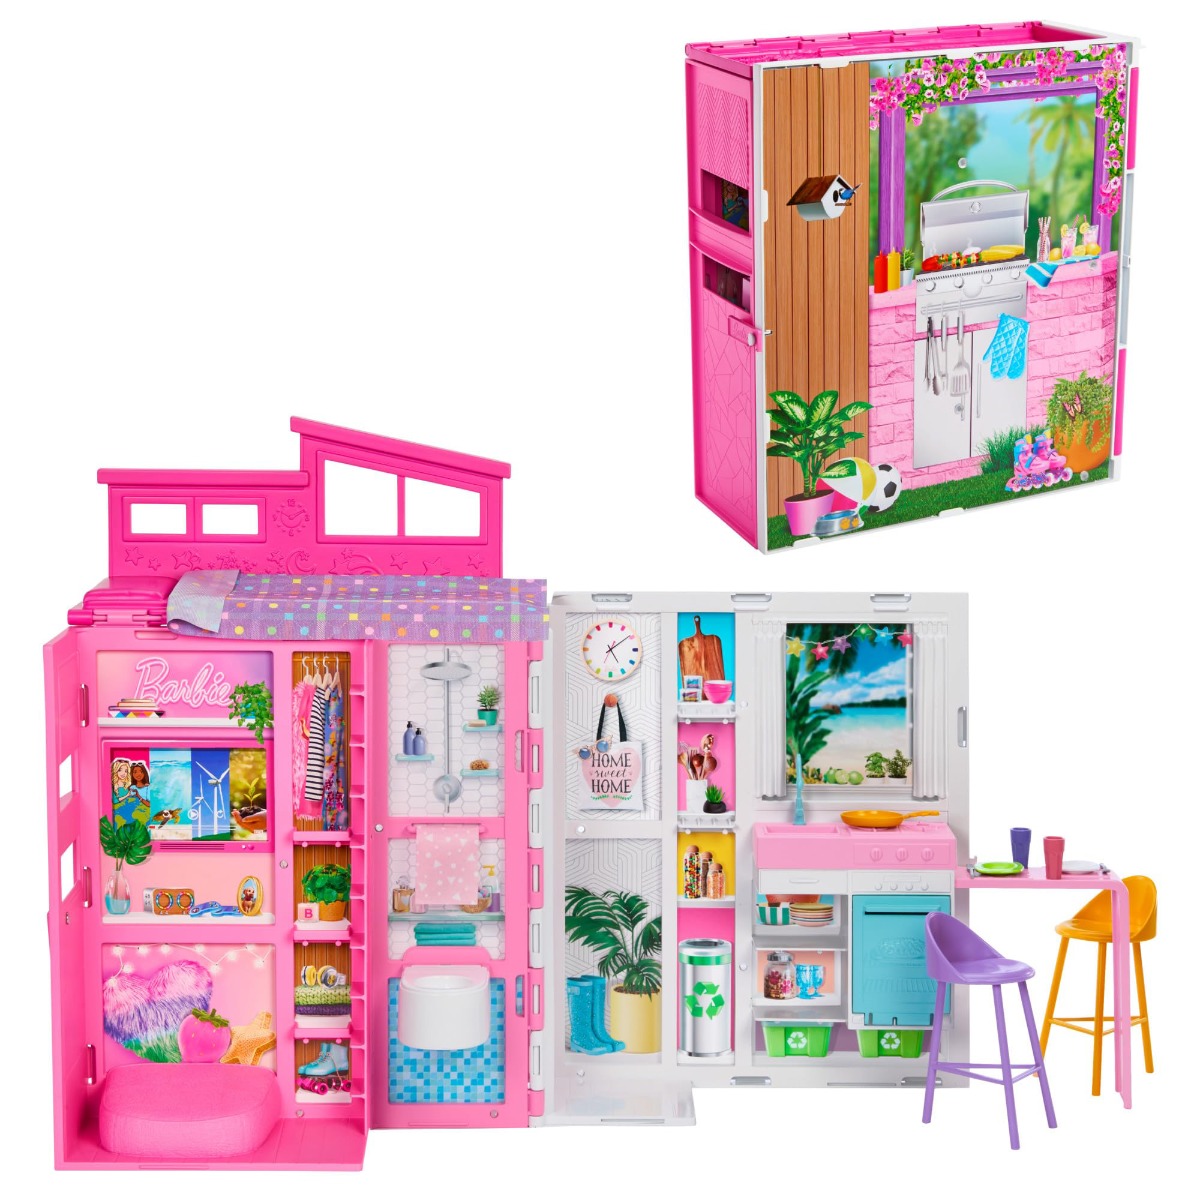 Set casa de papusi Barbie, Getaway House, HRJ76